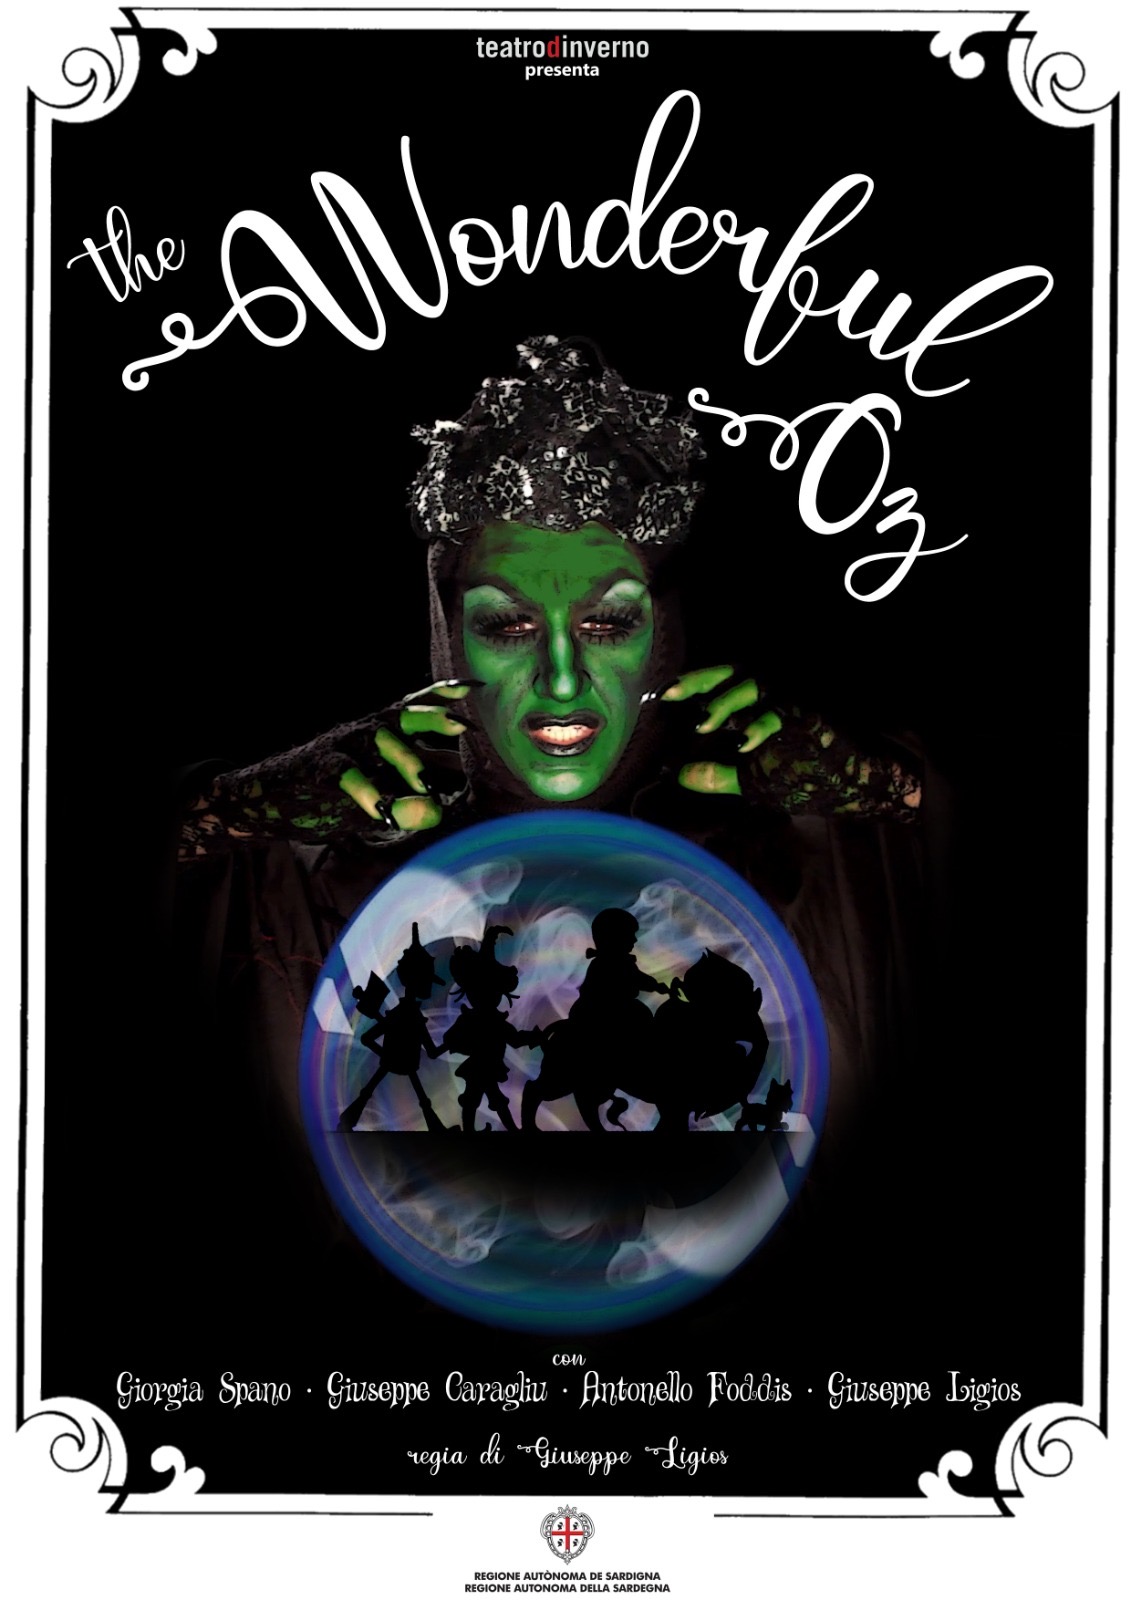 Teatro d'Inverno: The Wondeful Oz